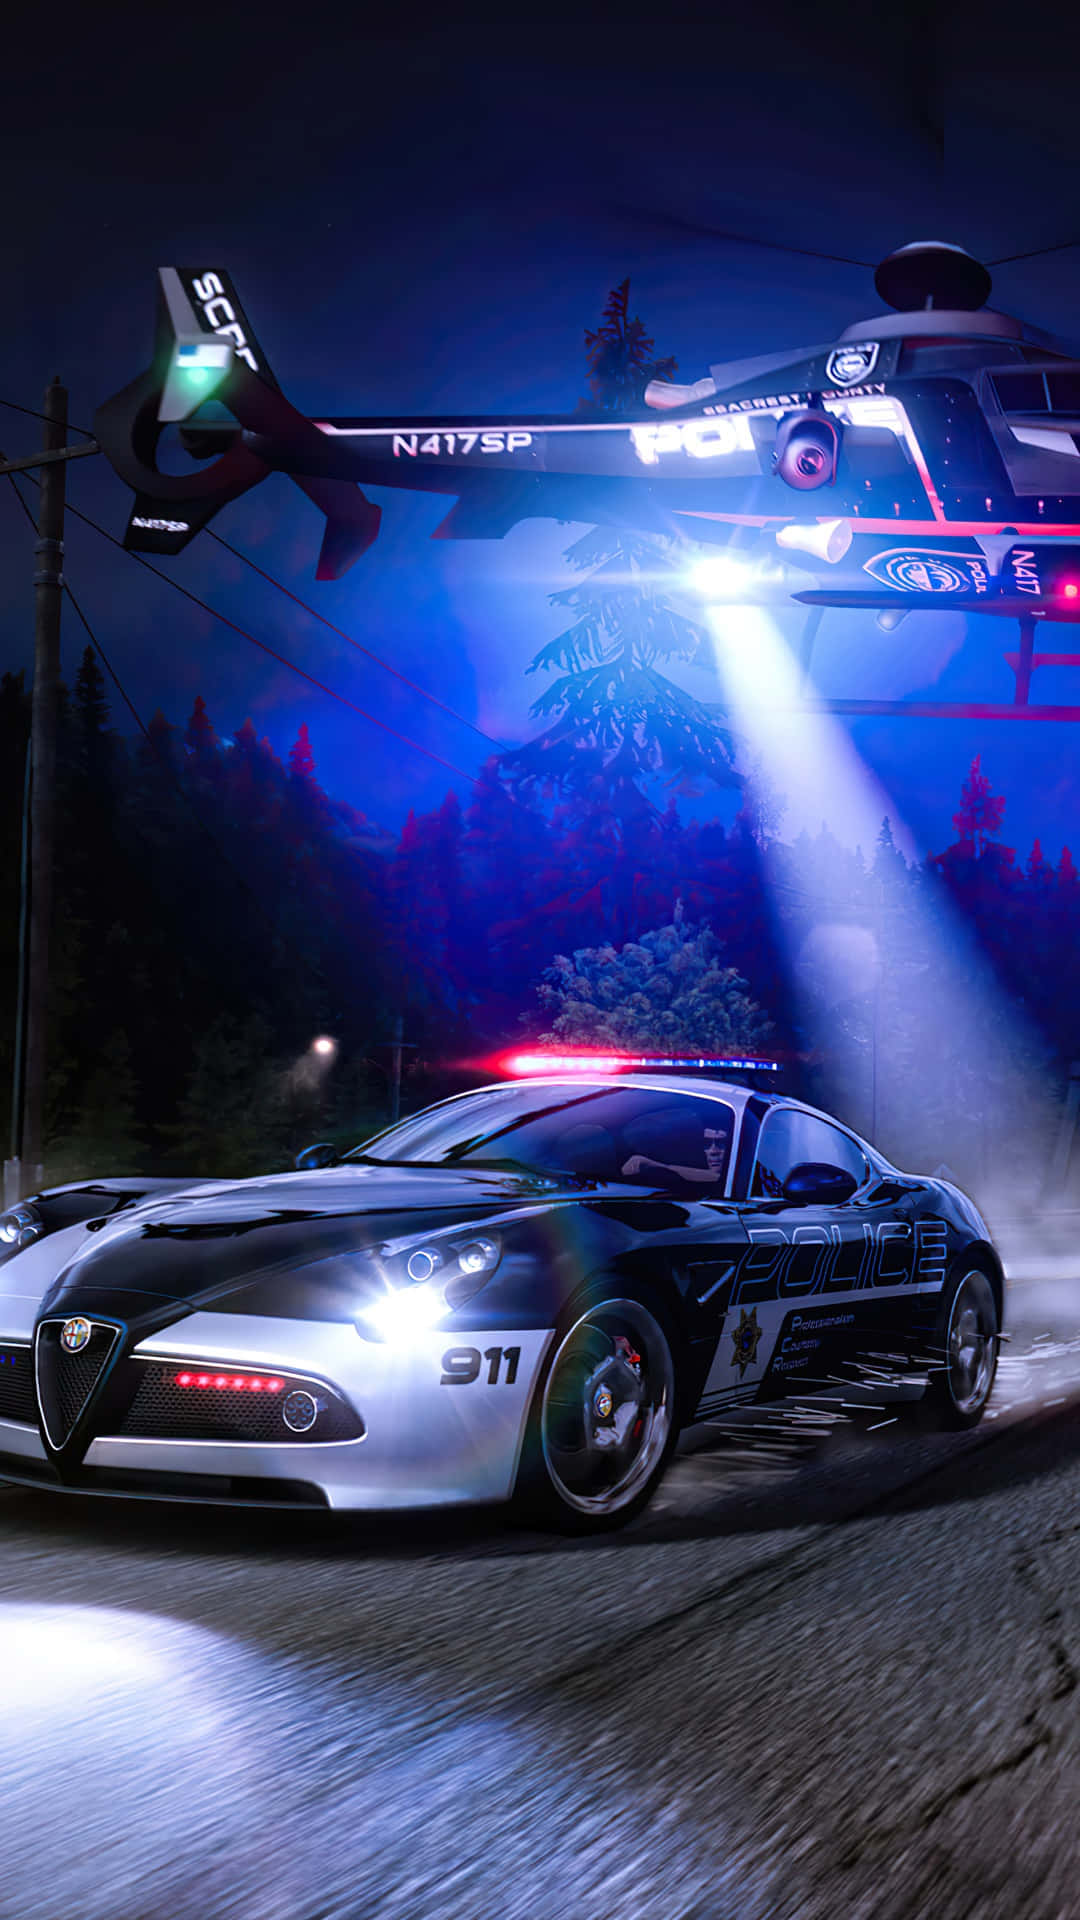 Emozionantevelocità - Sfondo Pixel 3 Need For Speed